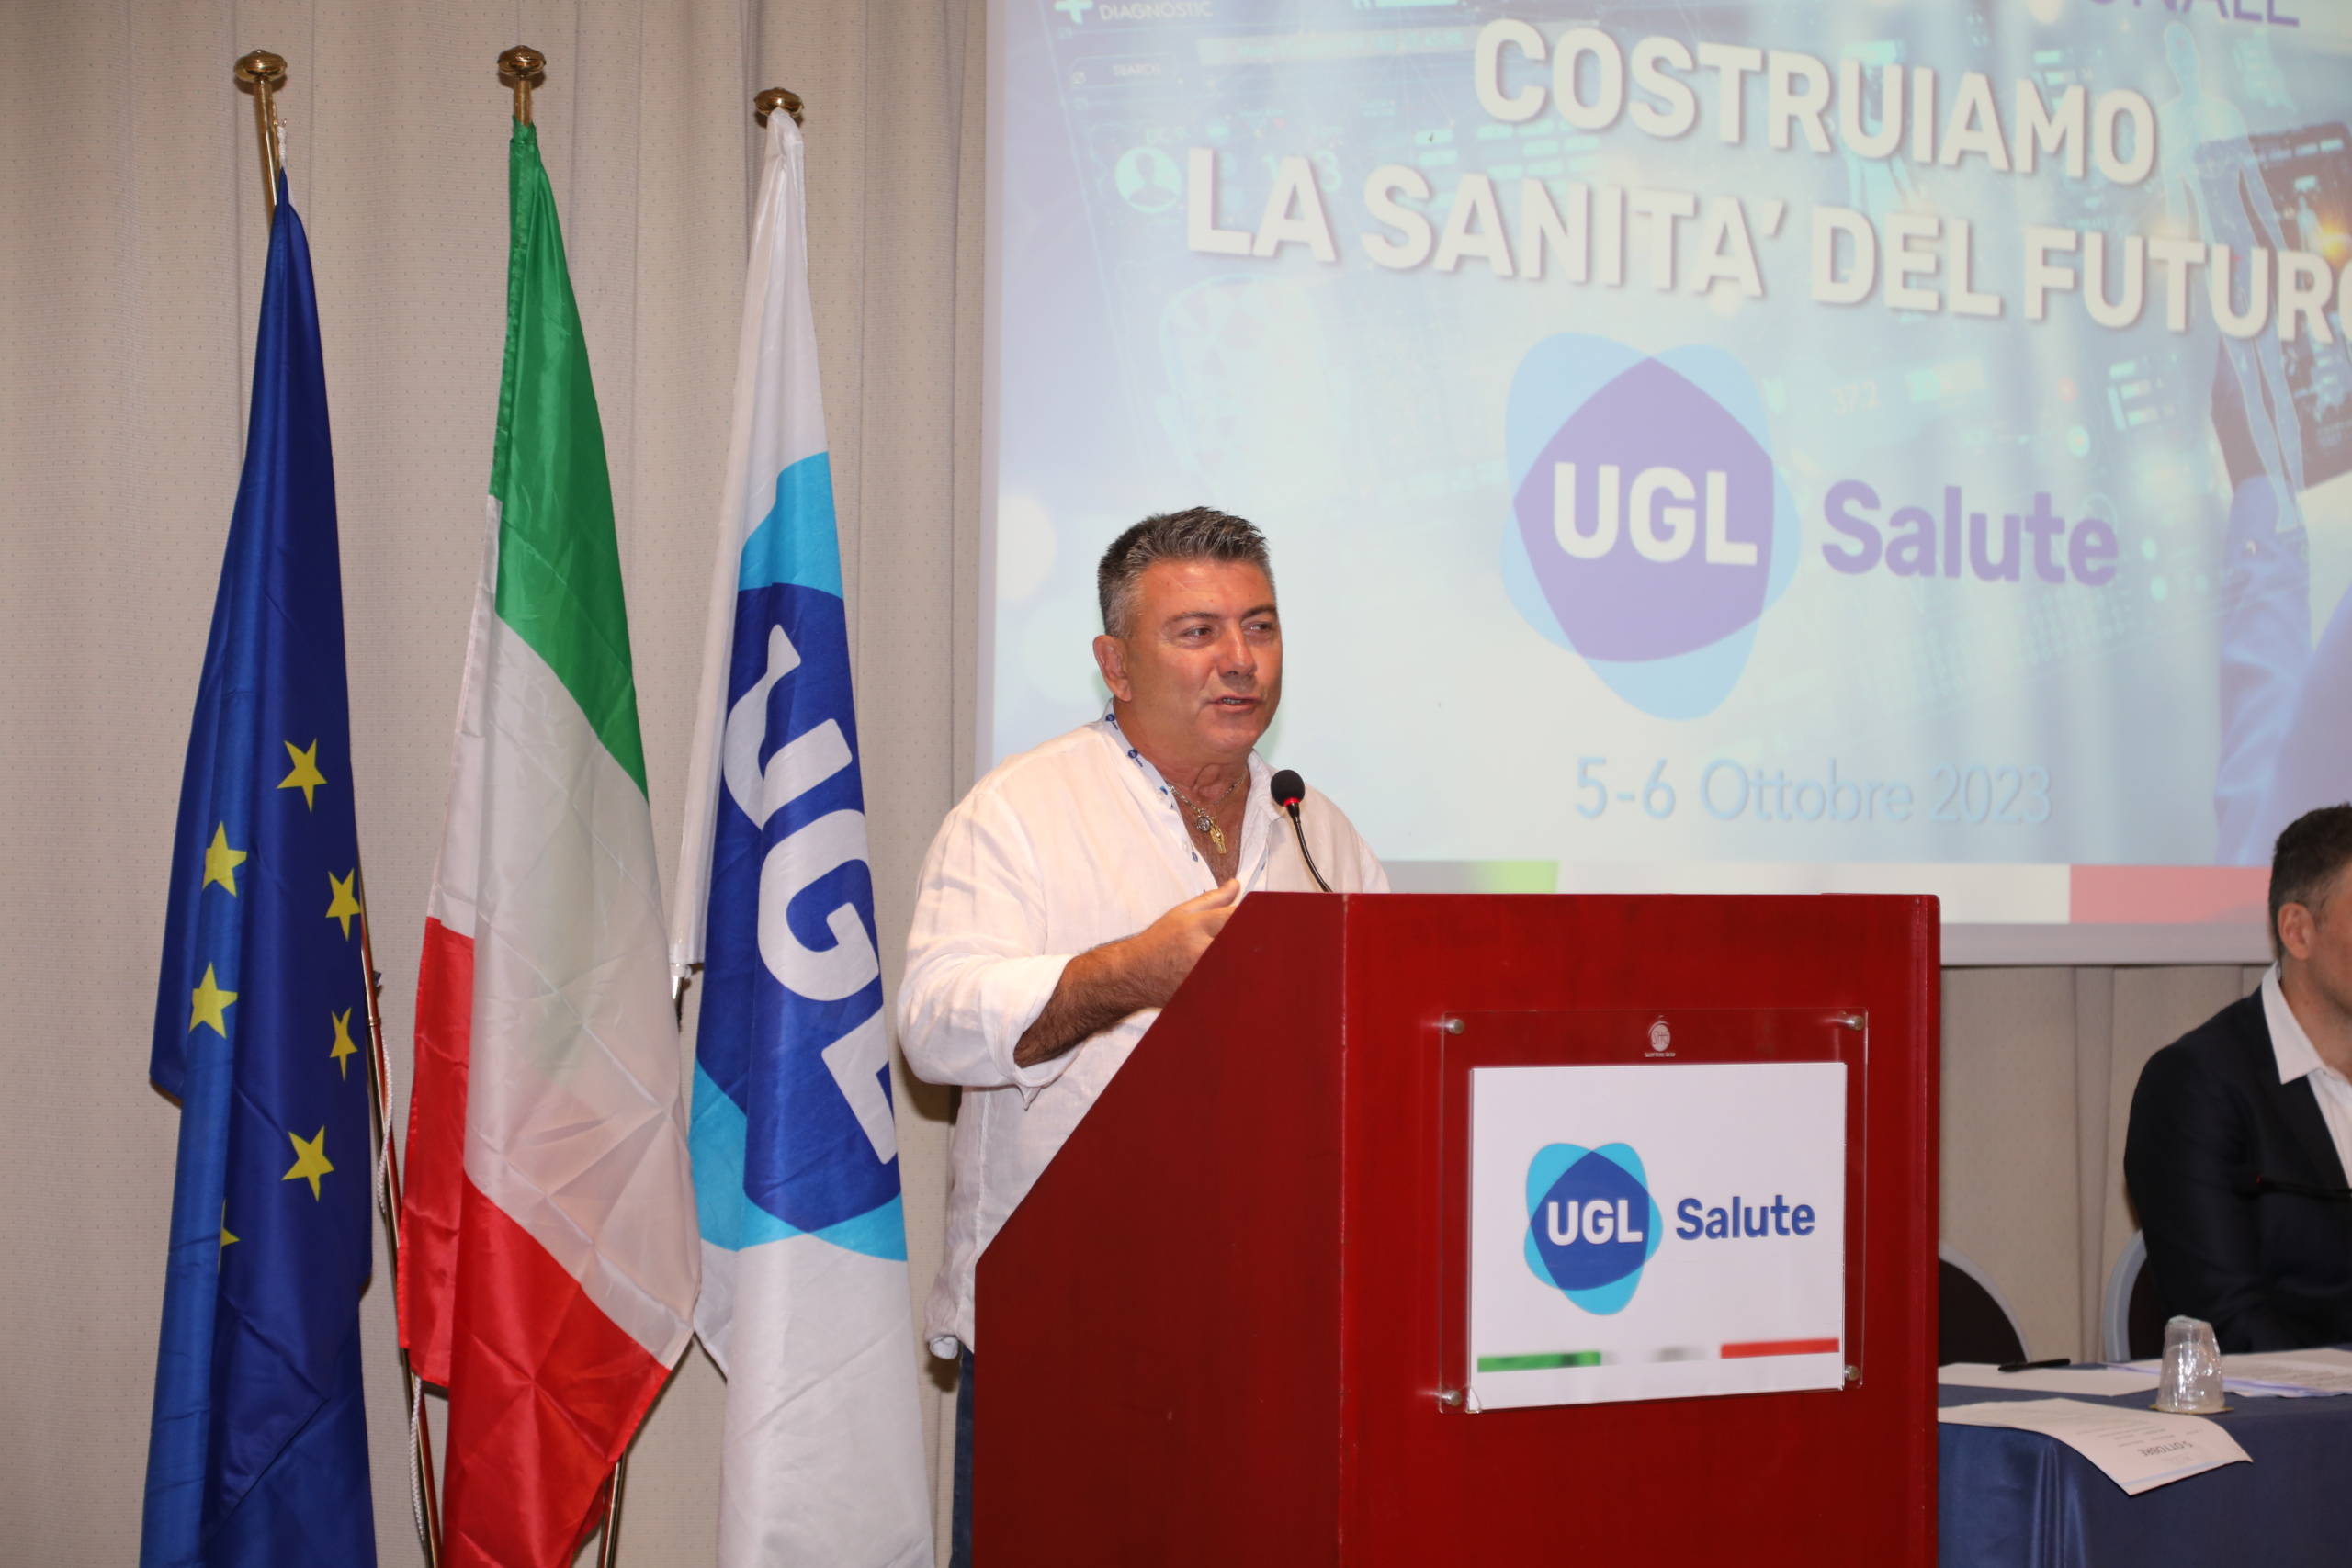 Sanità Marche, Rossi (UGL): “Le nostre proposte per la sicurezza sui luoghi di lavoro”